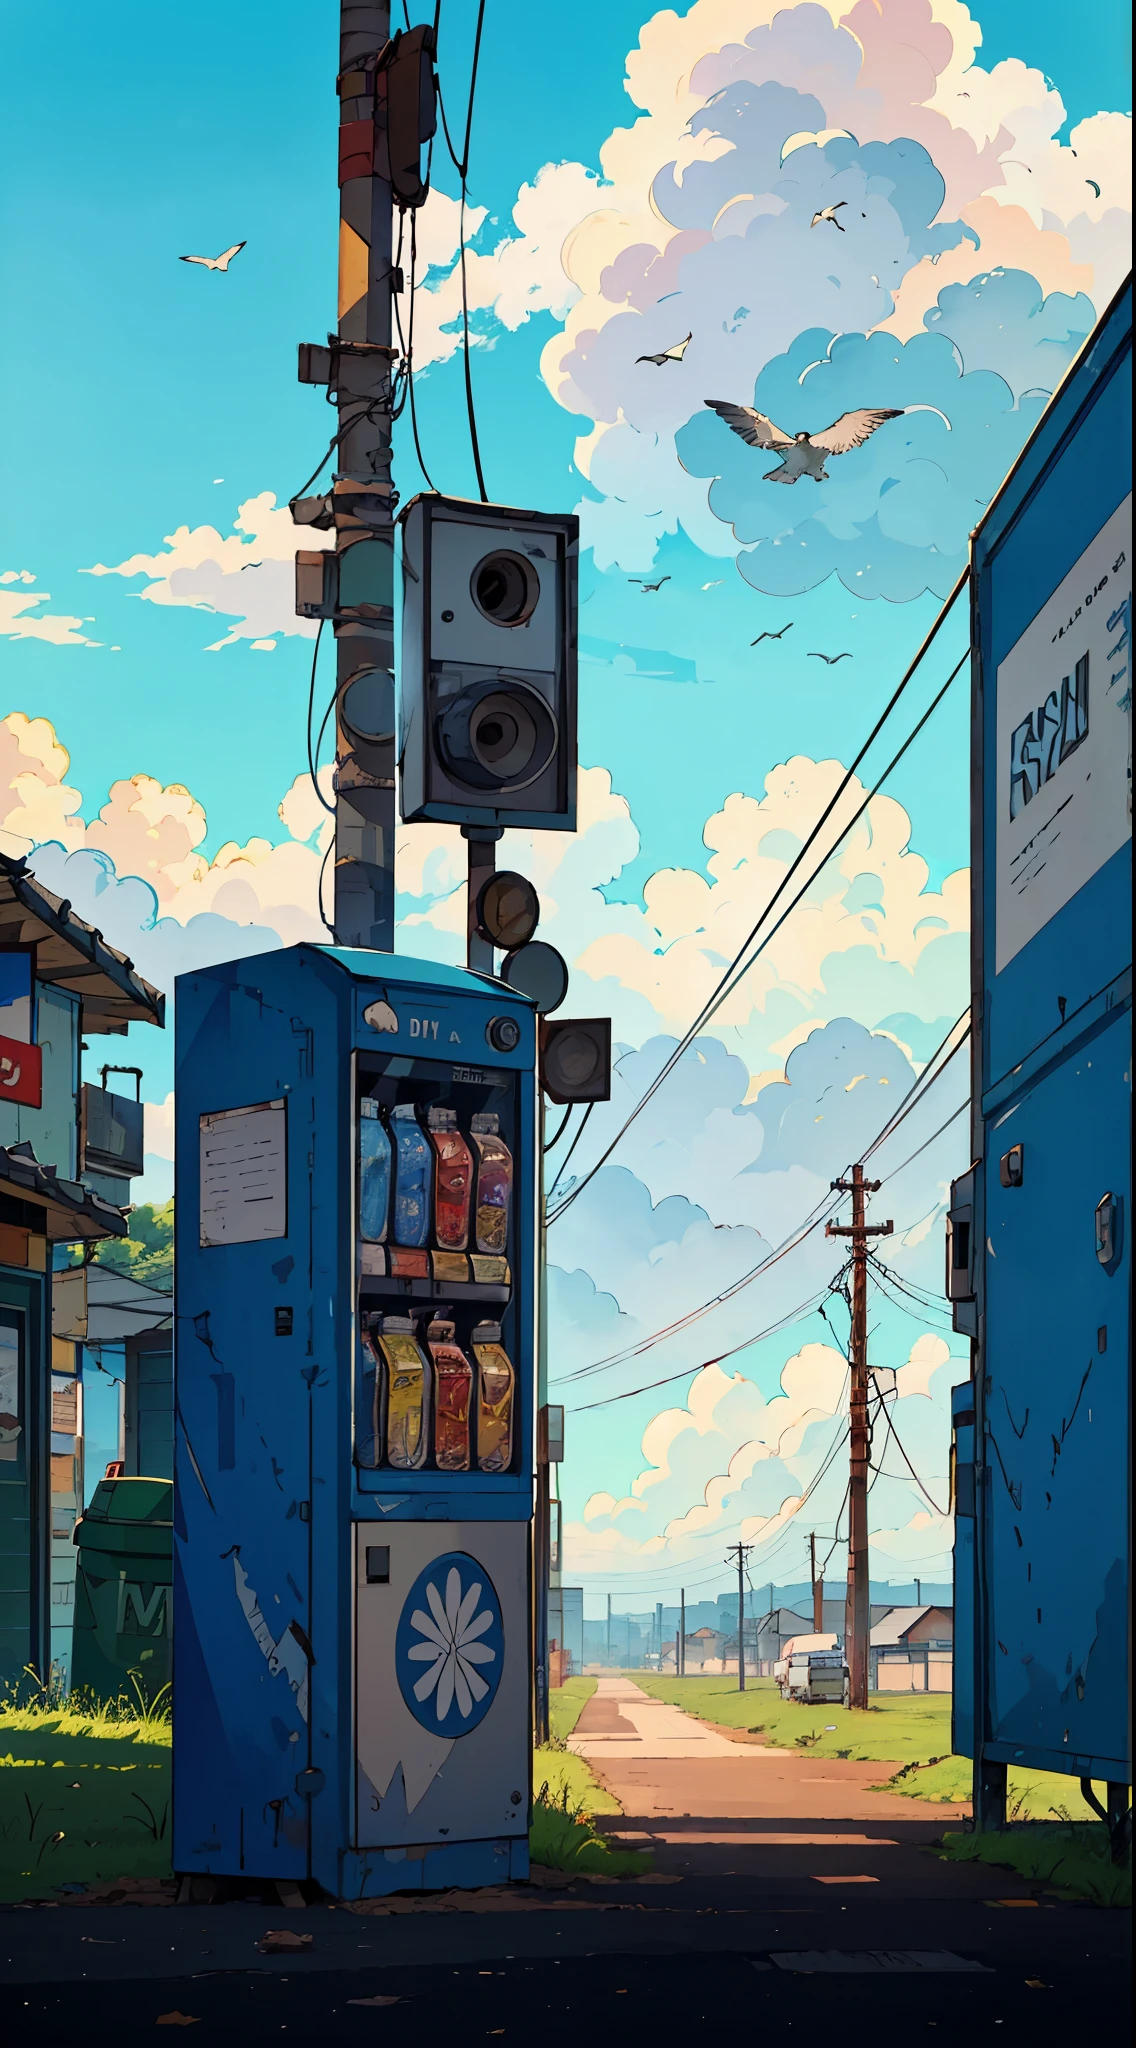 Distributeur automatique à distance en bordure de route avec poubelle, poteaux téléphoniques, ciel nuageux, des oiseaux, voitures en arrière-plan, prise de vue grand angle, très détaillé, Très aiguisé